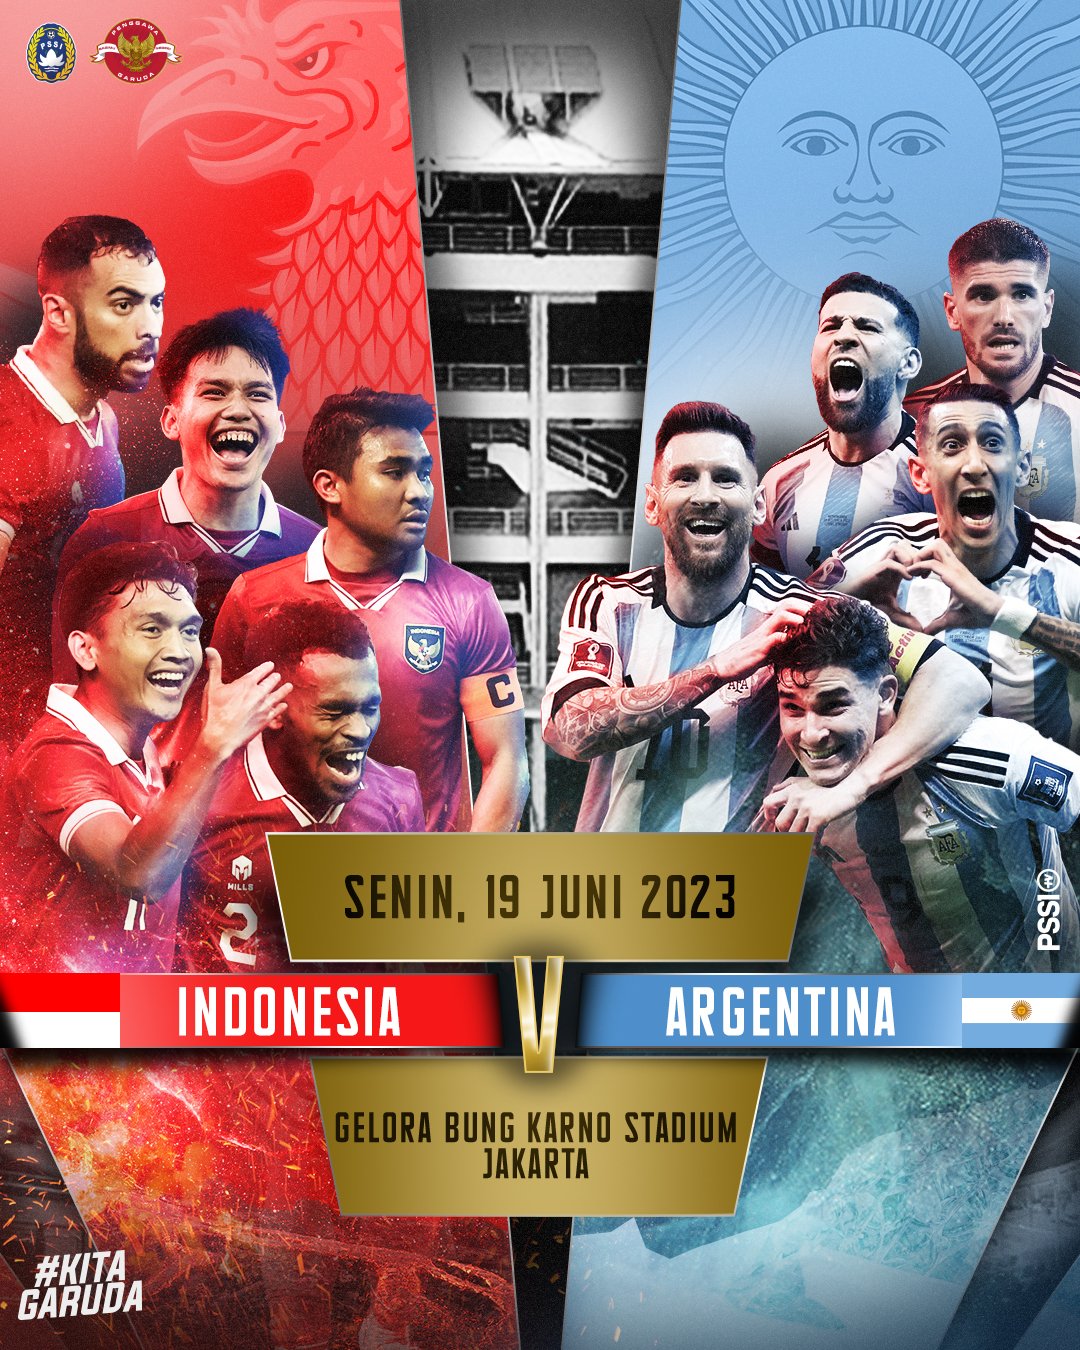 Siap-siap! War Tiket Indonesia vs Argentina Dimulai Siang Ini, Simak Cara Belinya